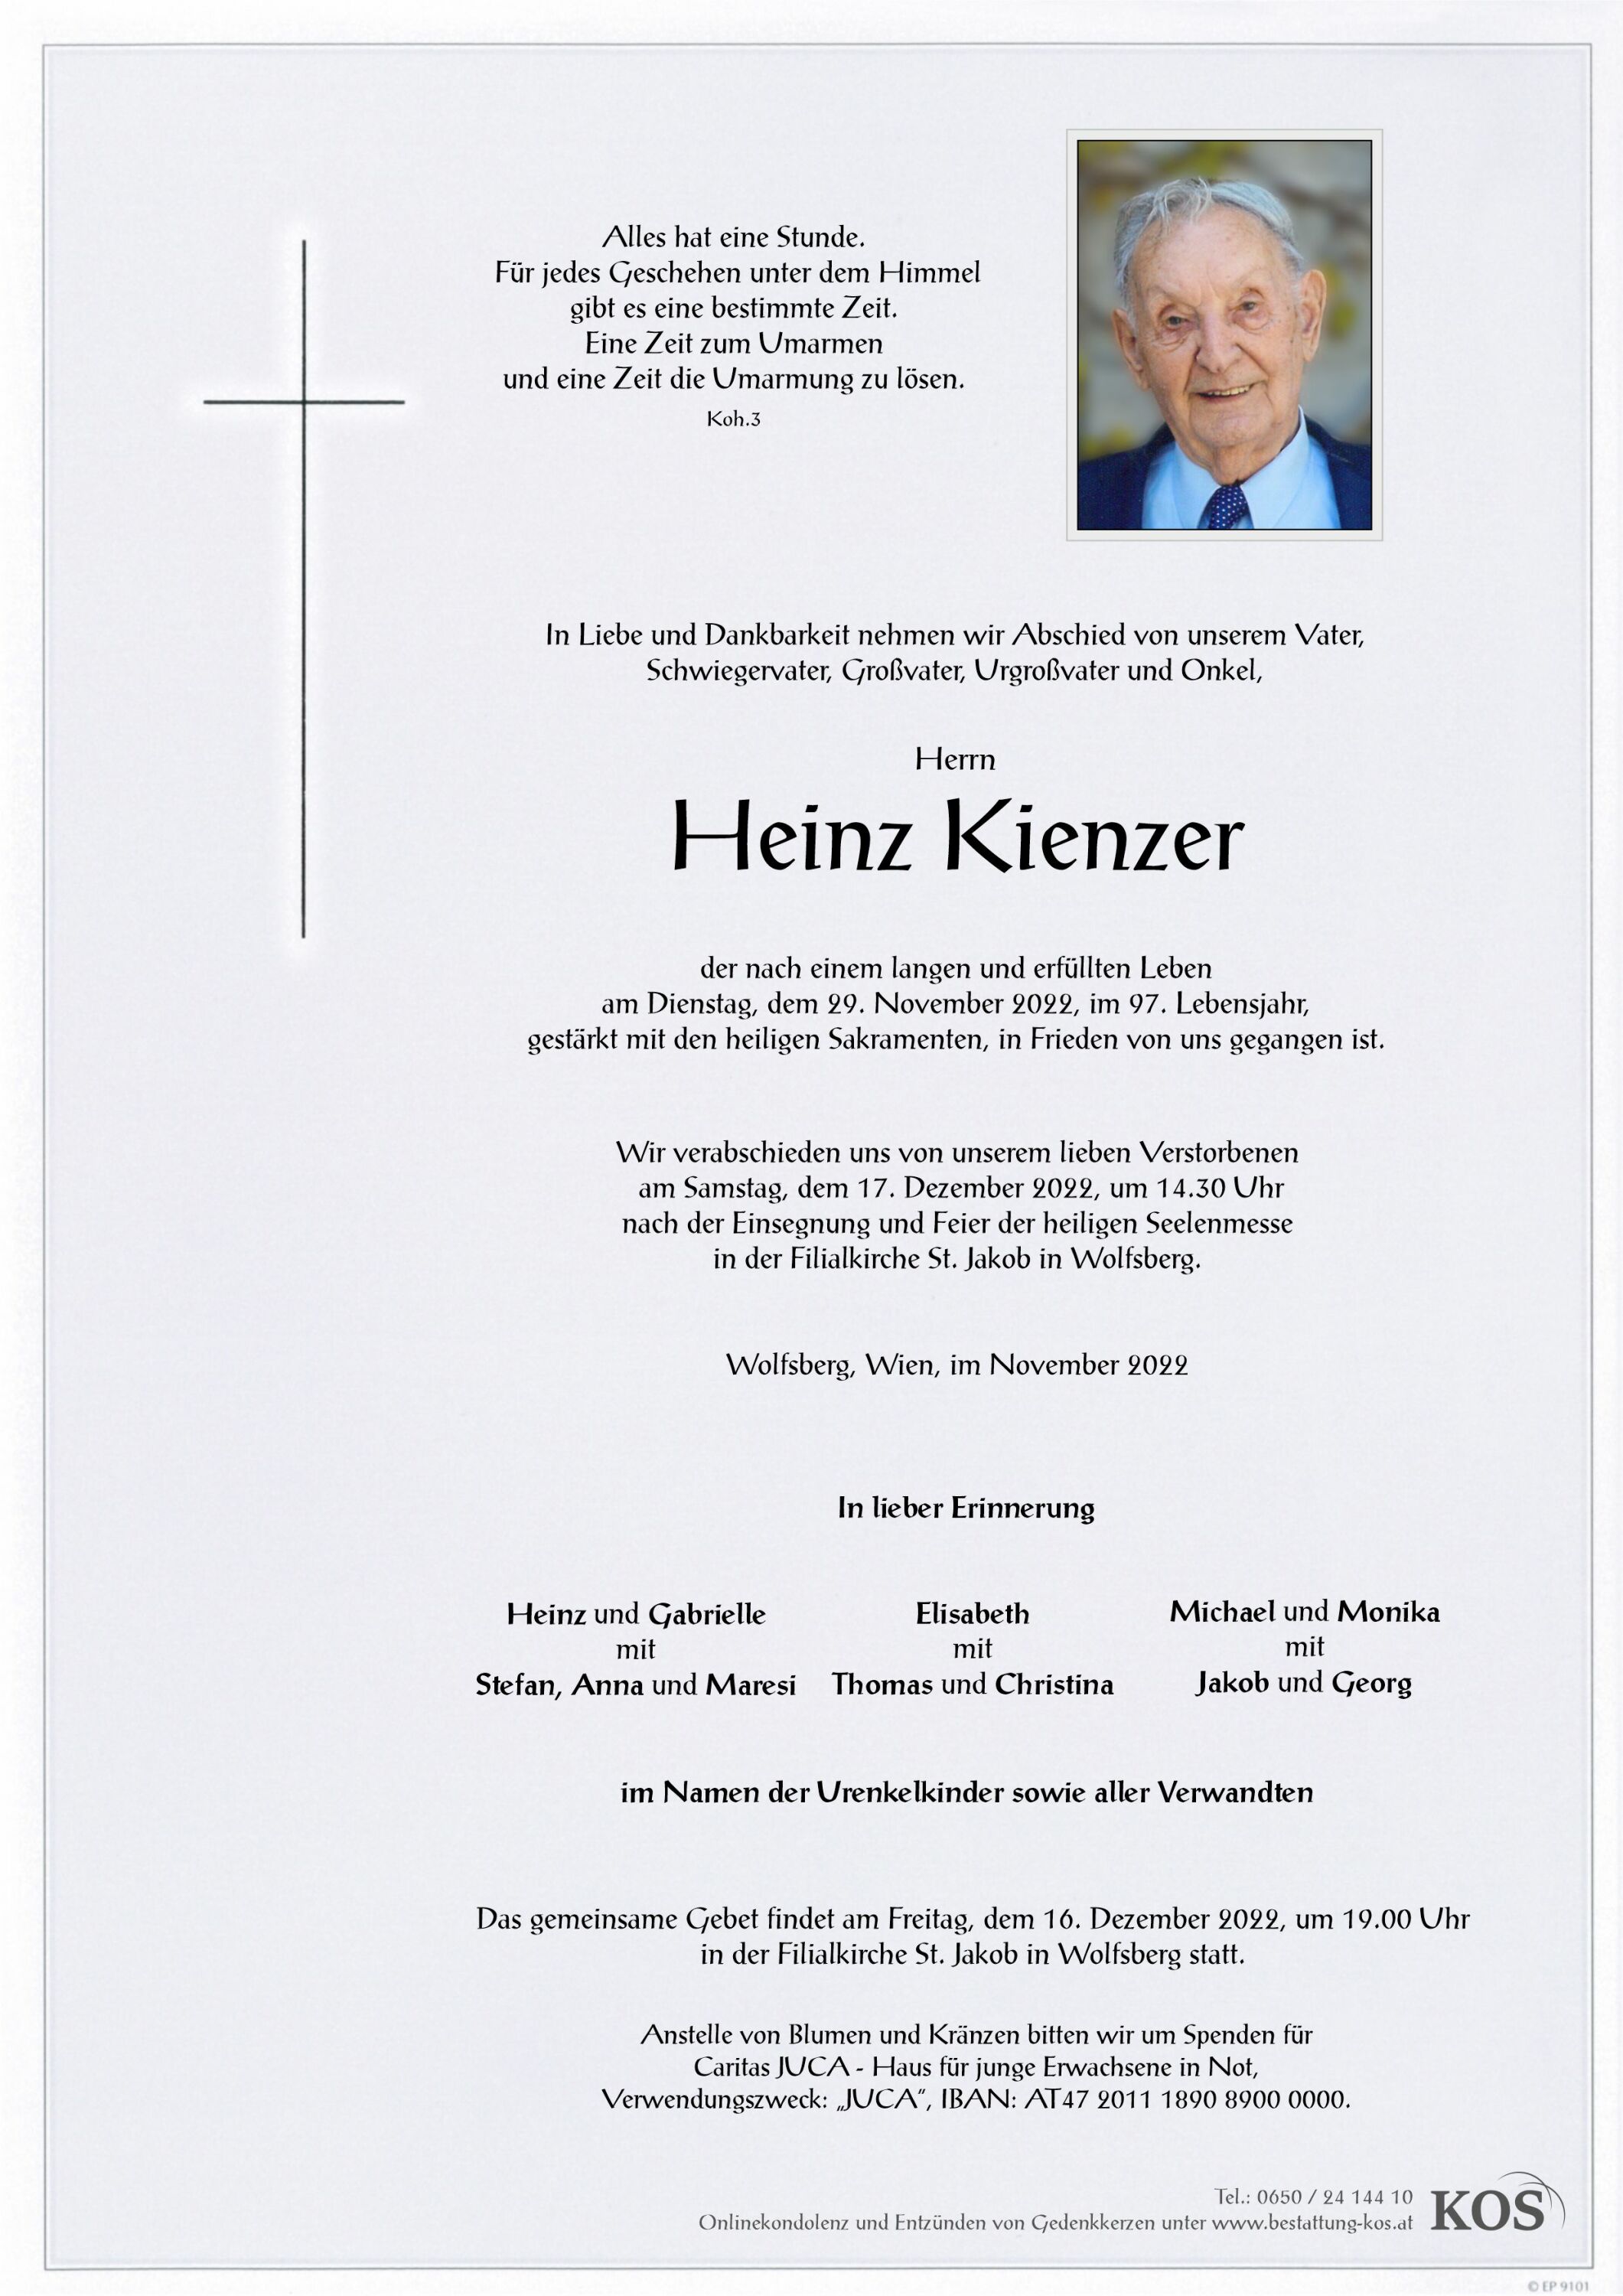 Heinz Kienzer